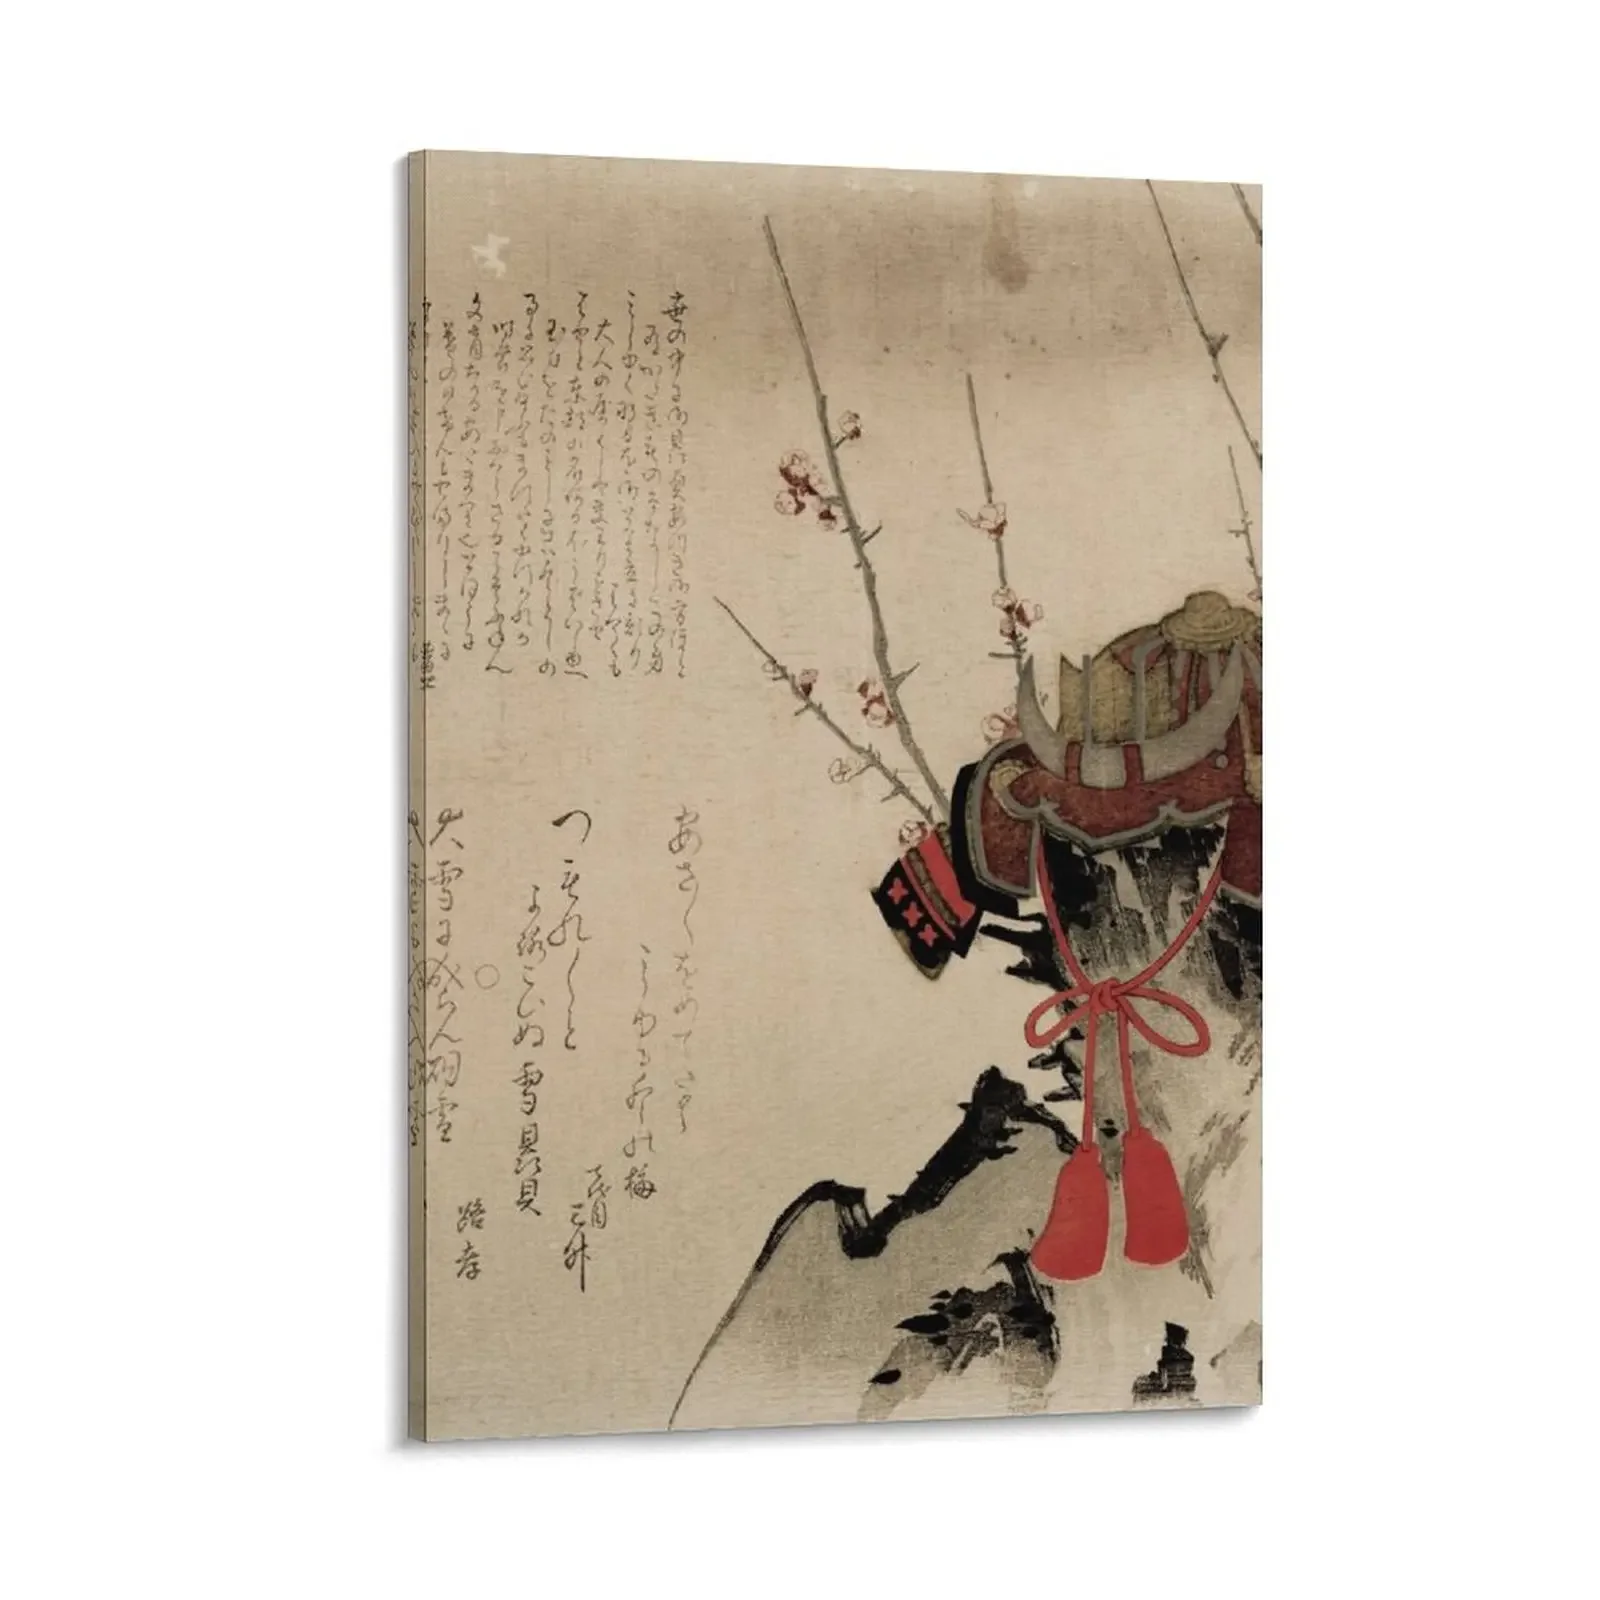 

The Samurais притягательная Картина на холсте для спальни декоративные предметы для украшения дома в эстетике